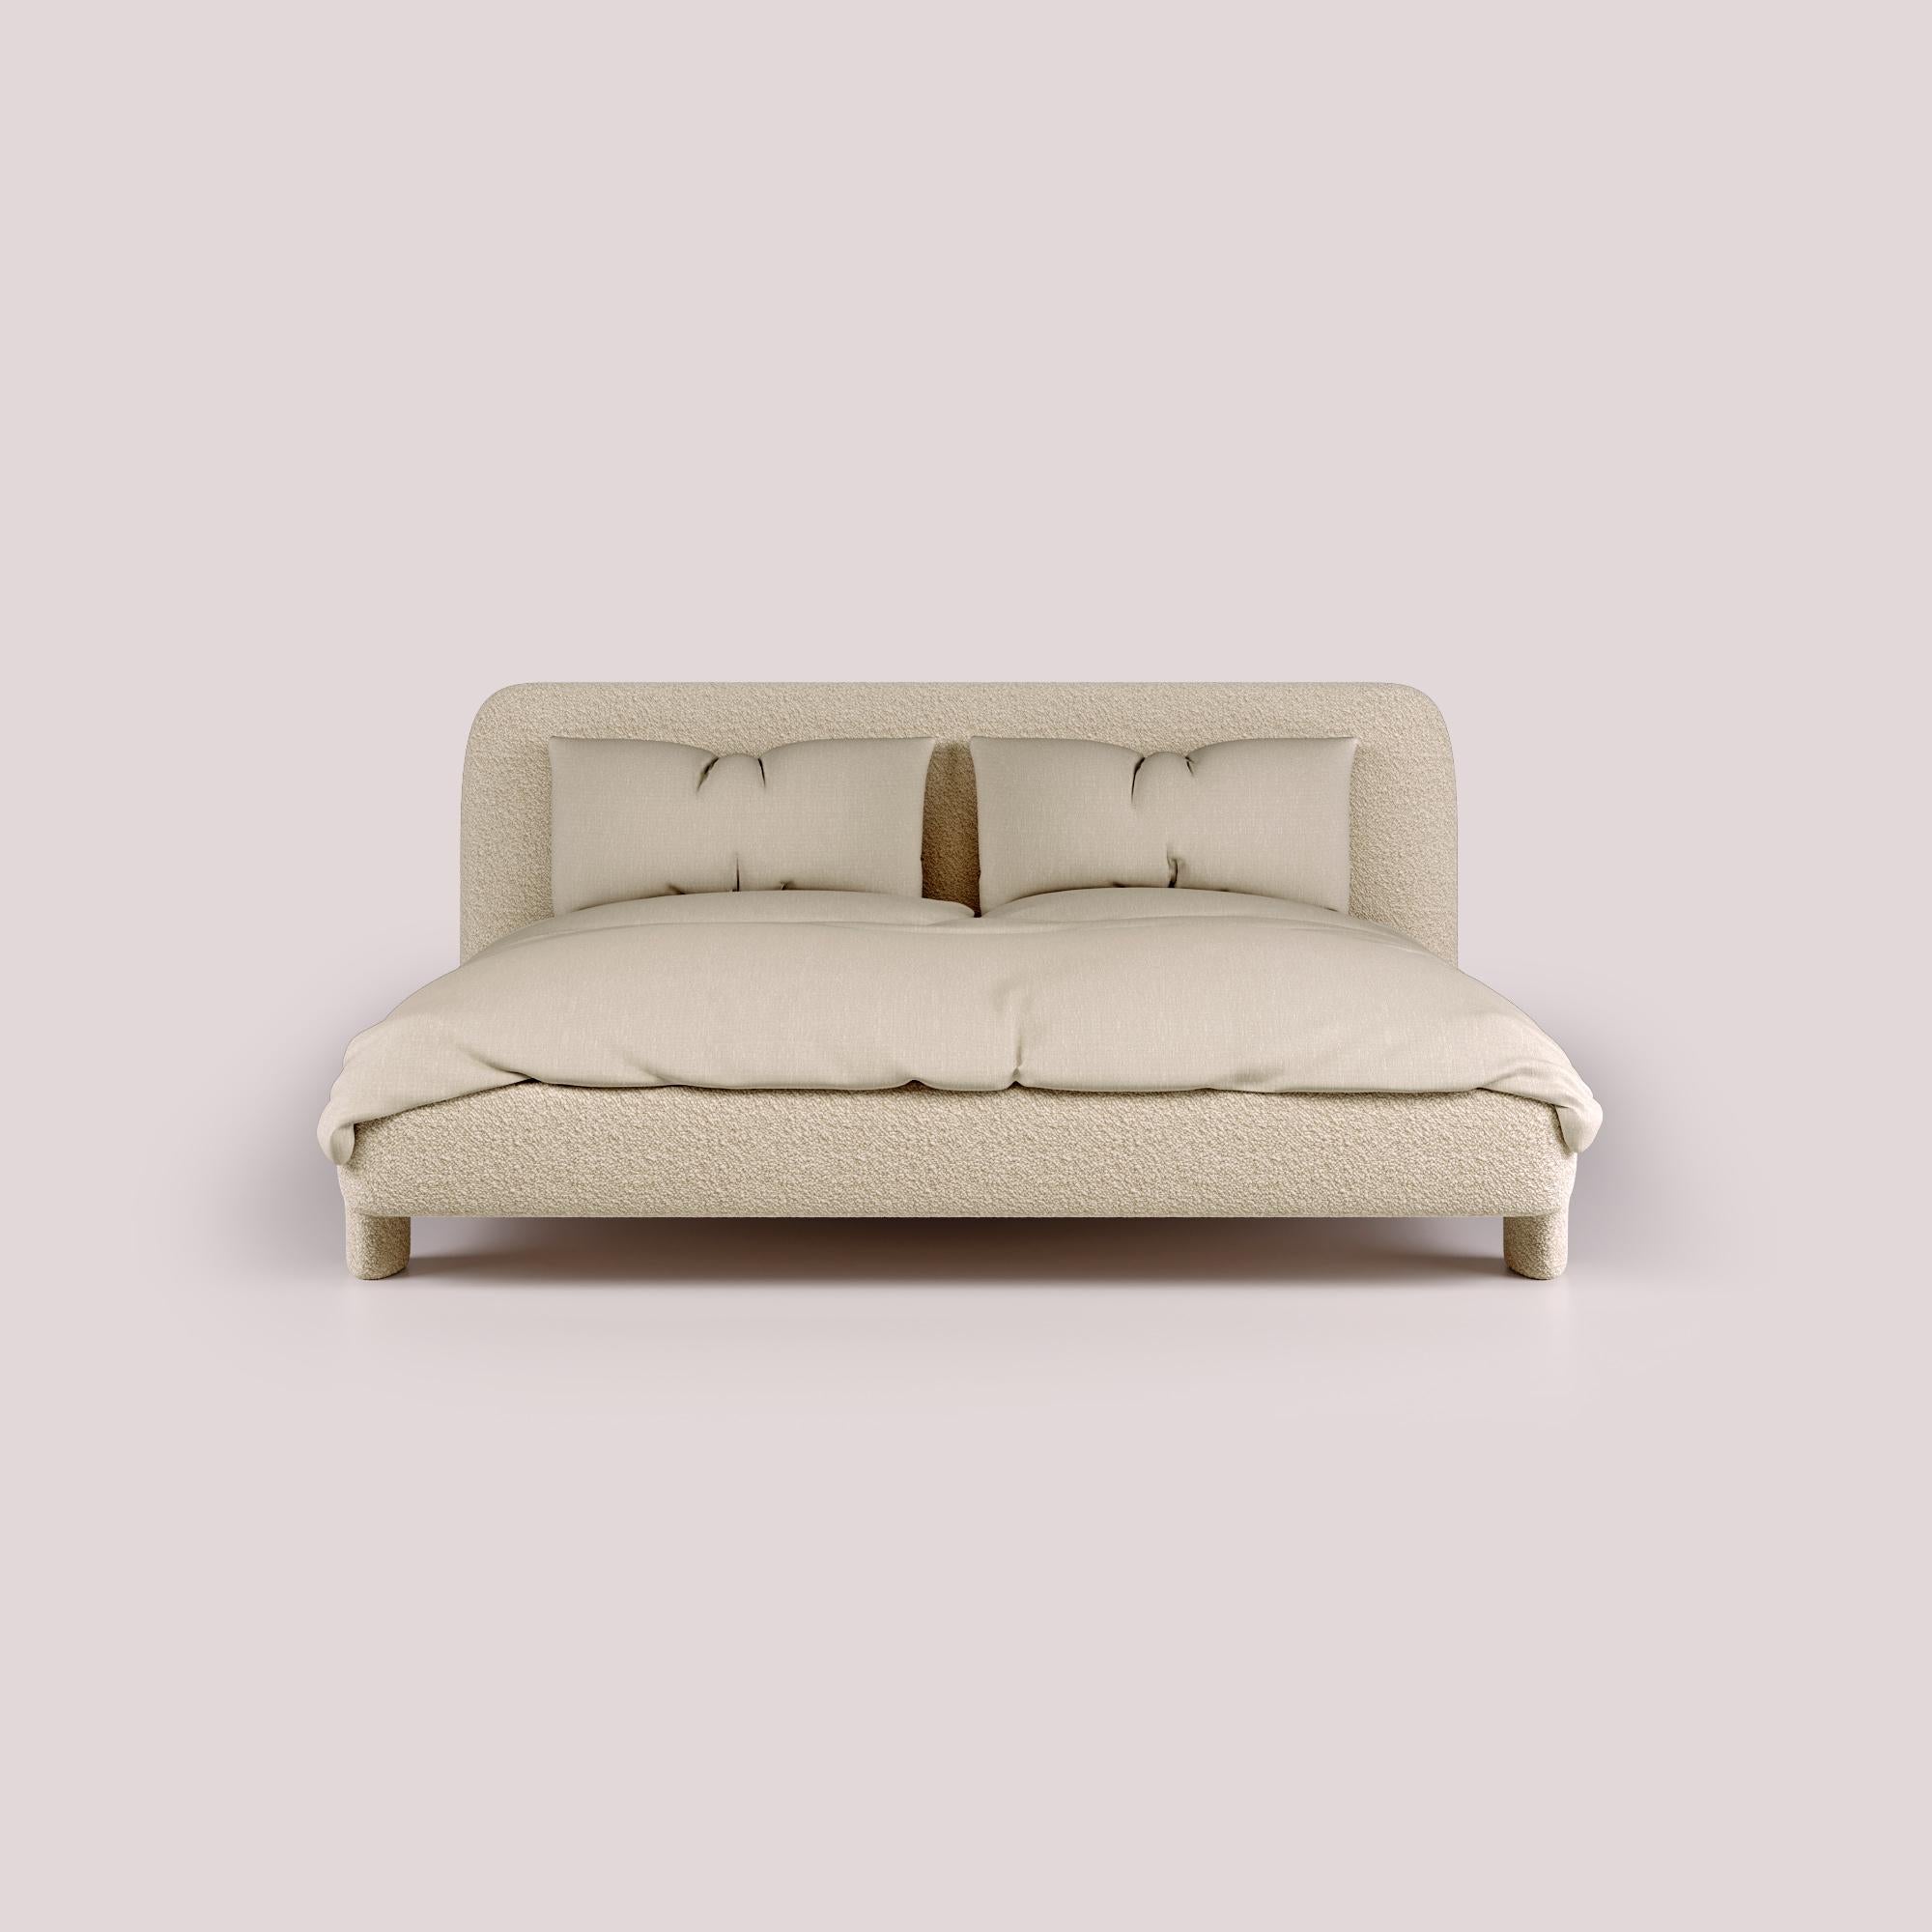 Treten Sie ein in das Reich des unvergleichlichen Luxus mit dem Bold Double Bed, in dem Komfort auf Opulenz trifft, um einen Ort der Ruhe und Entspannung zu schaffen. Die nahtlose Verschmelzung von überragendem Komfort und außergewöhnlichem Design